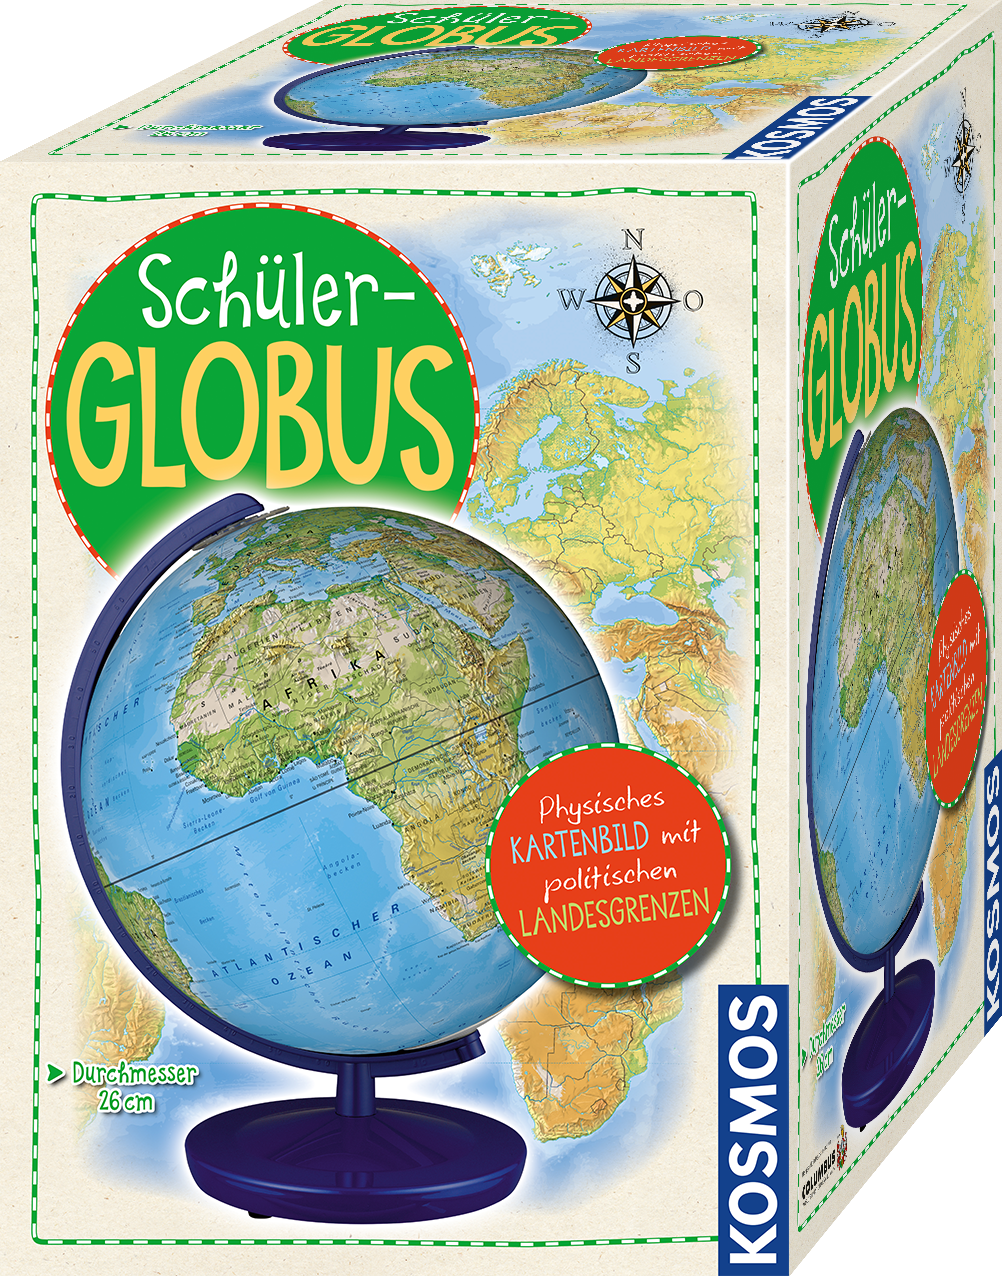 Schüler-Globus von Kosmos